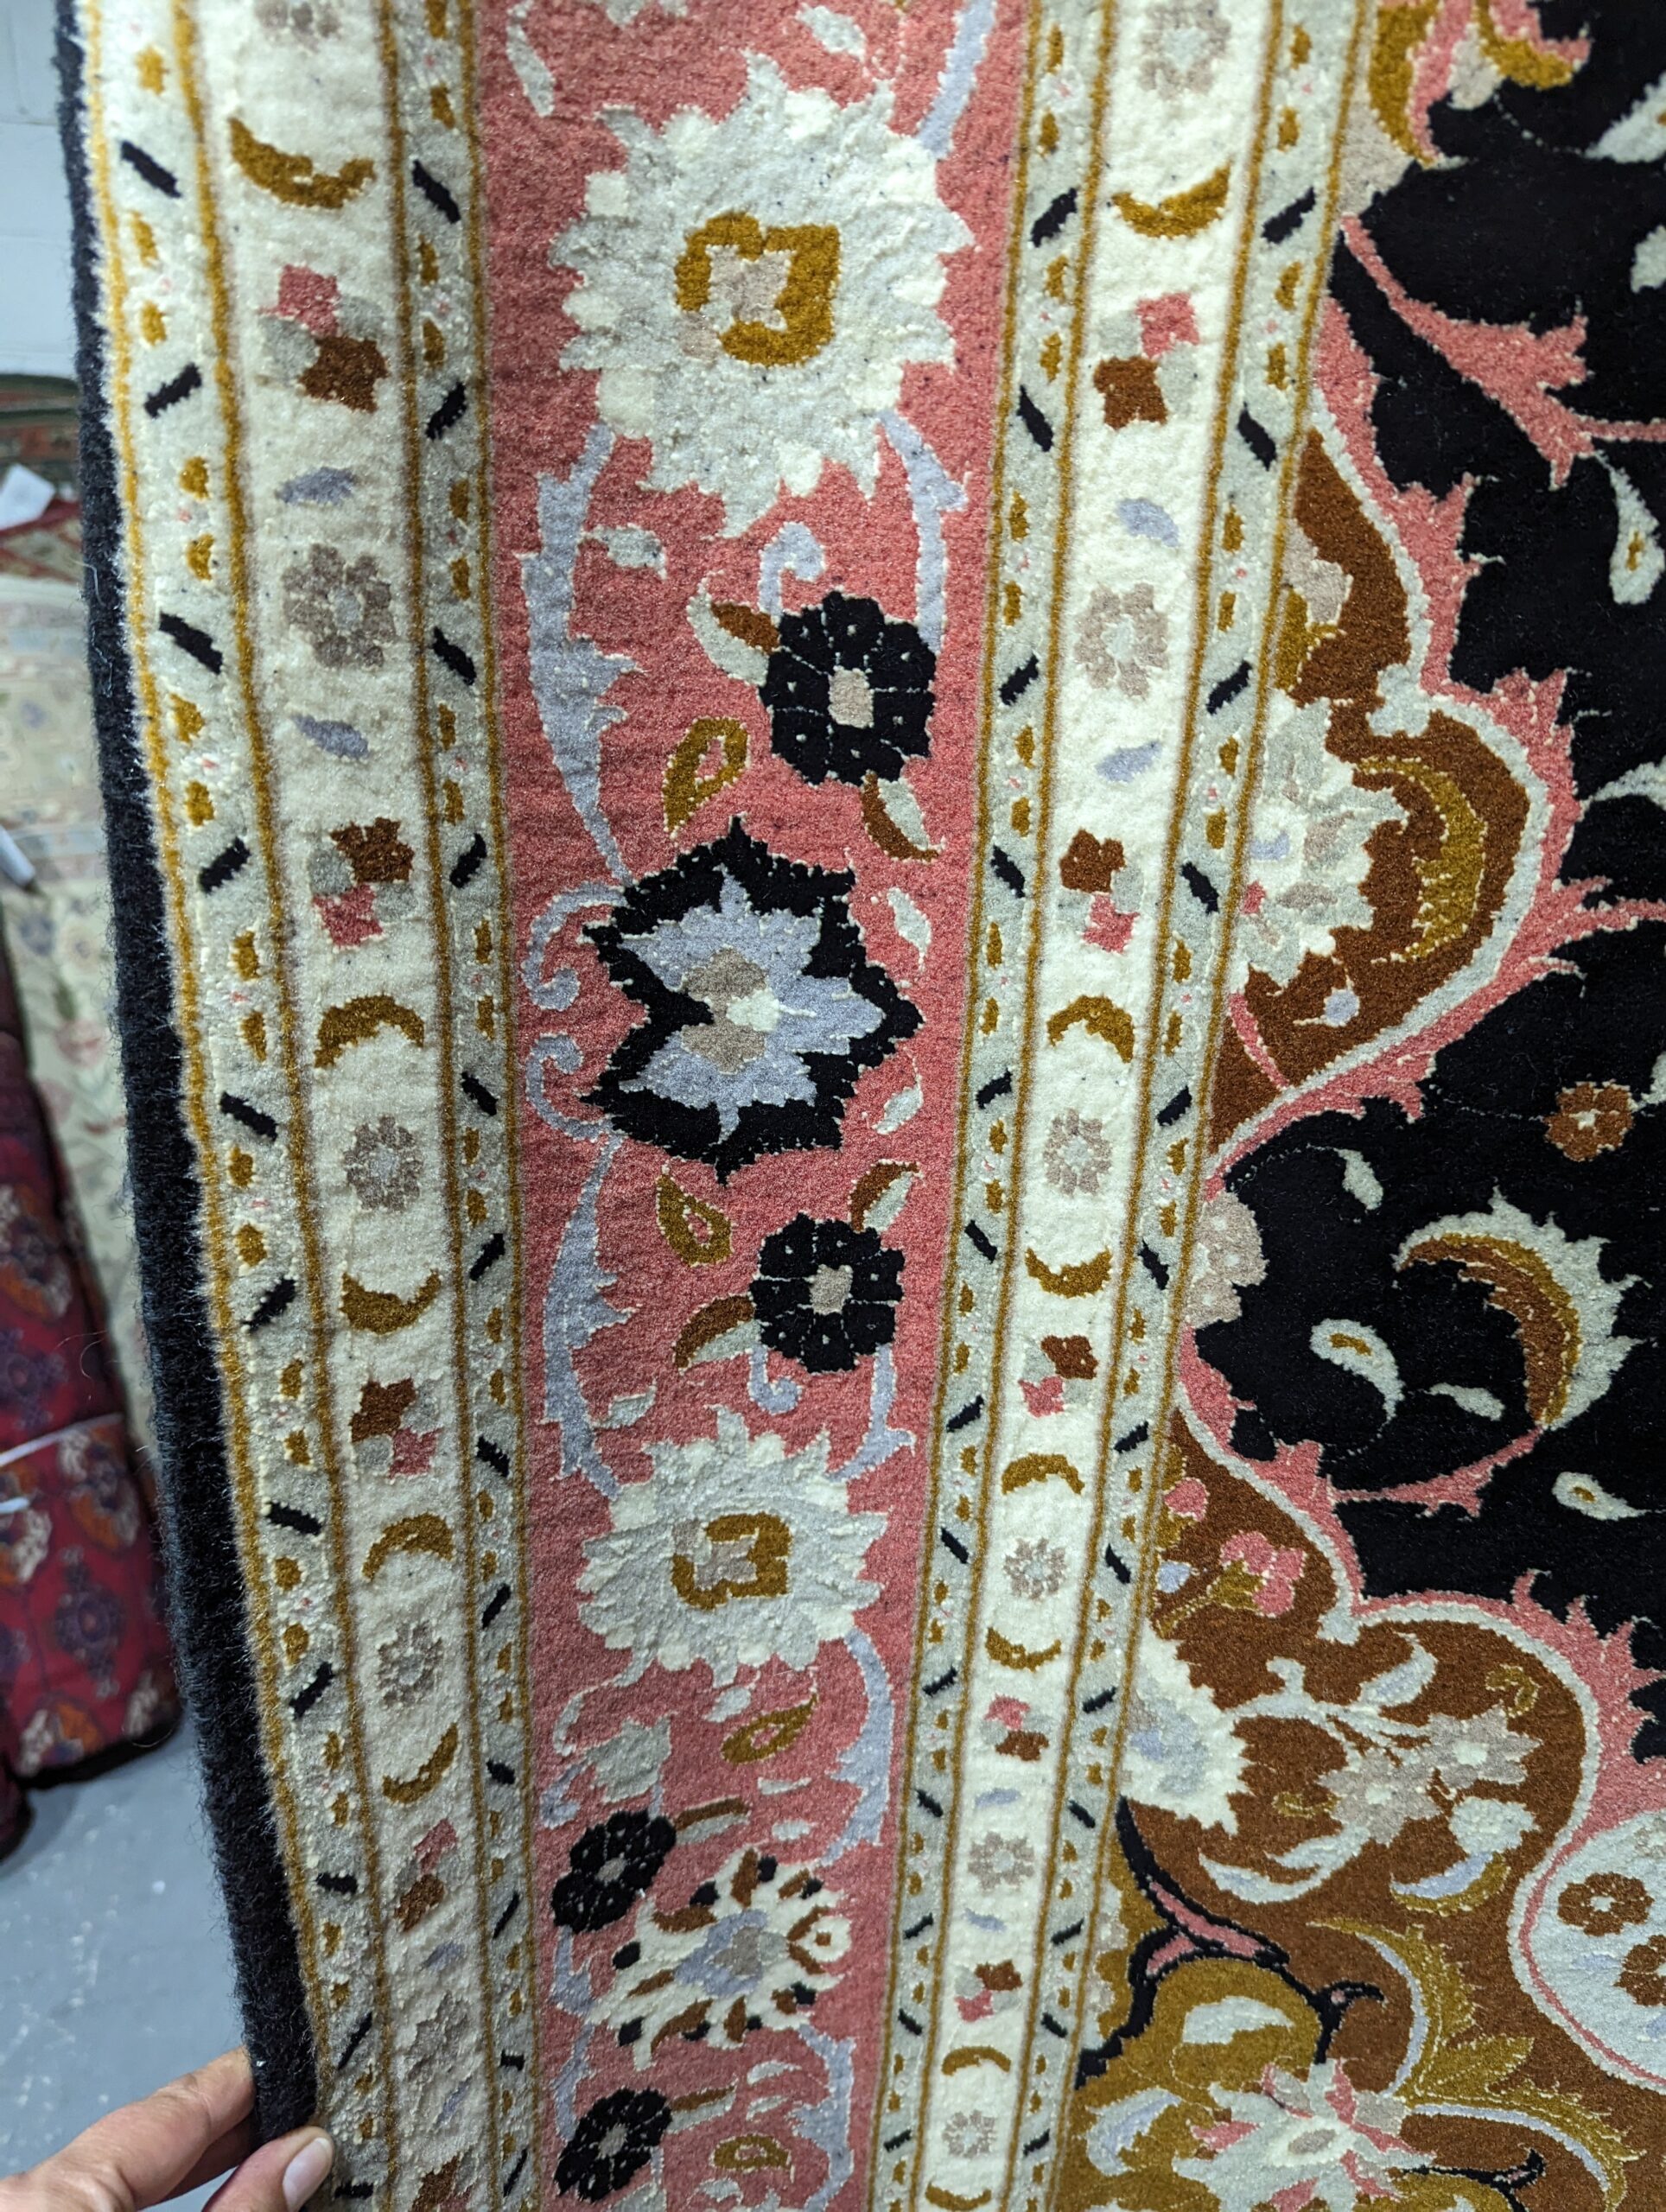 5' x 6'8" Tabriz Persian Rug